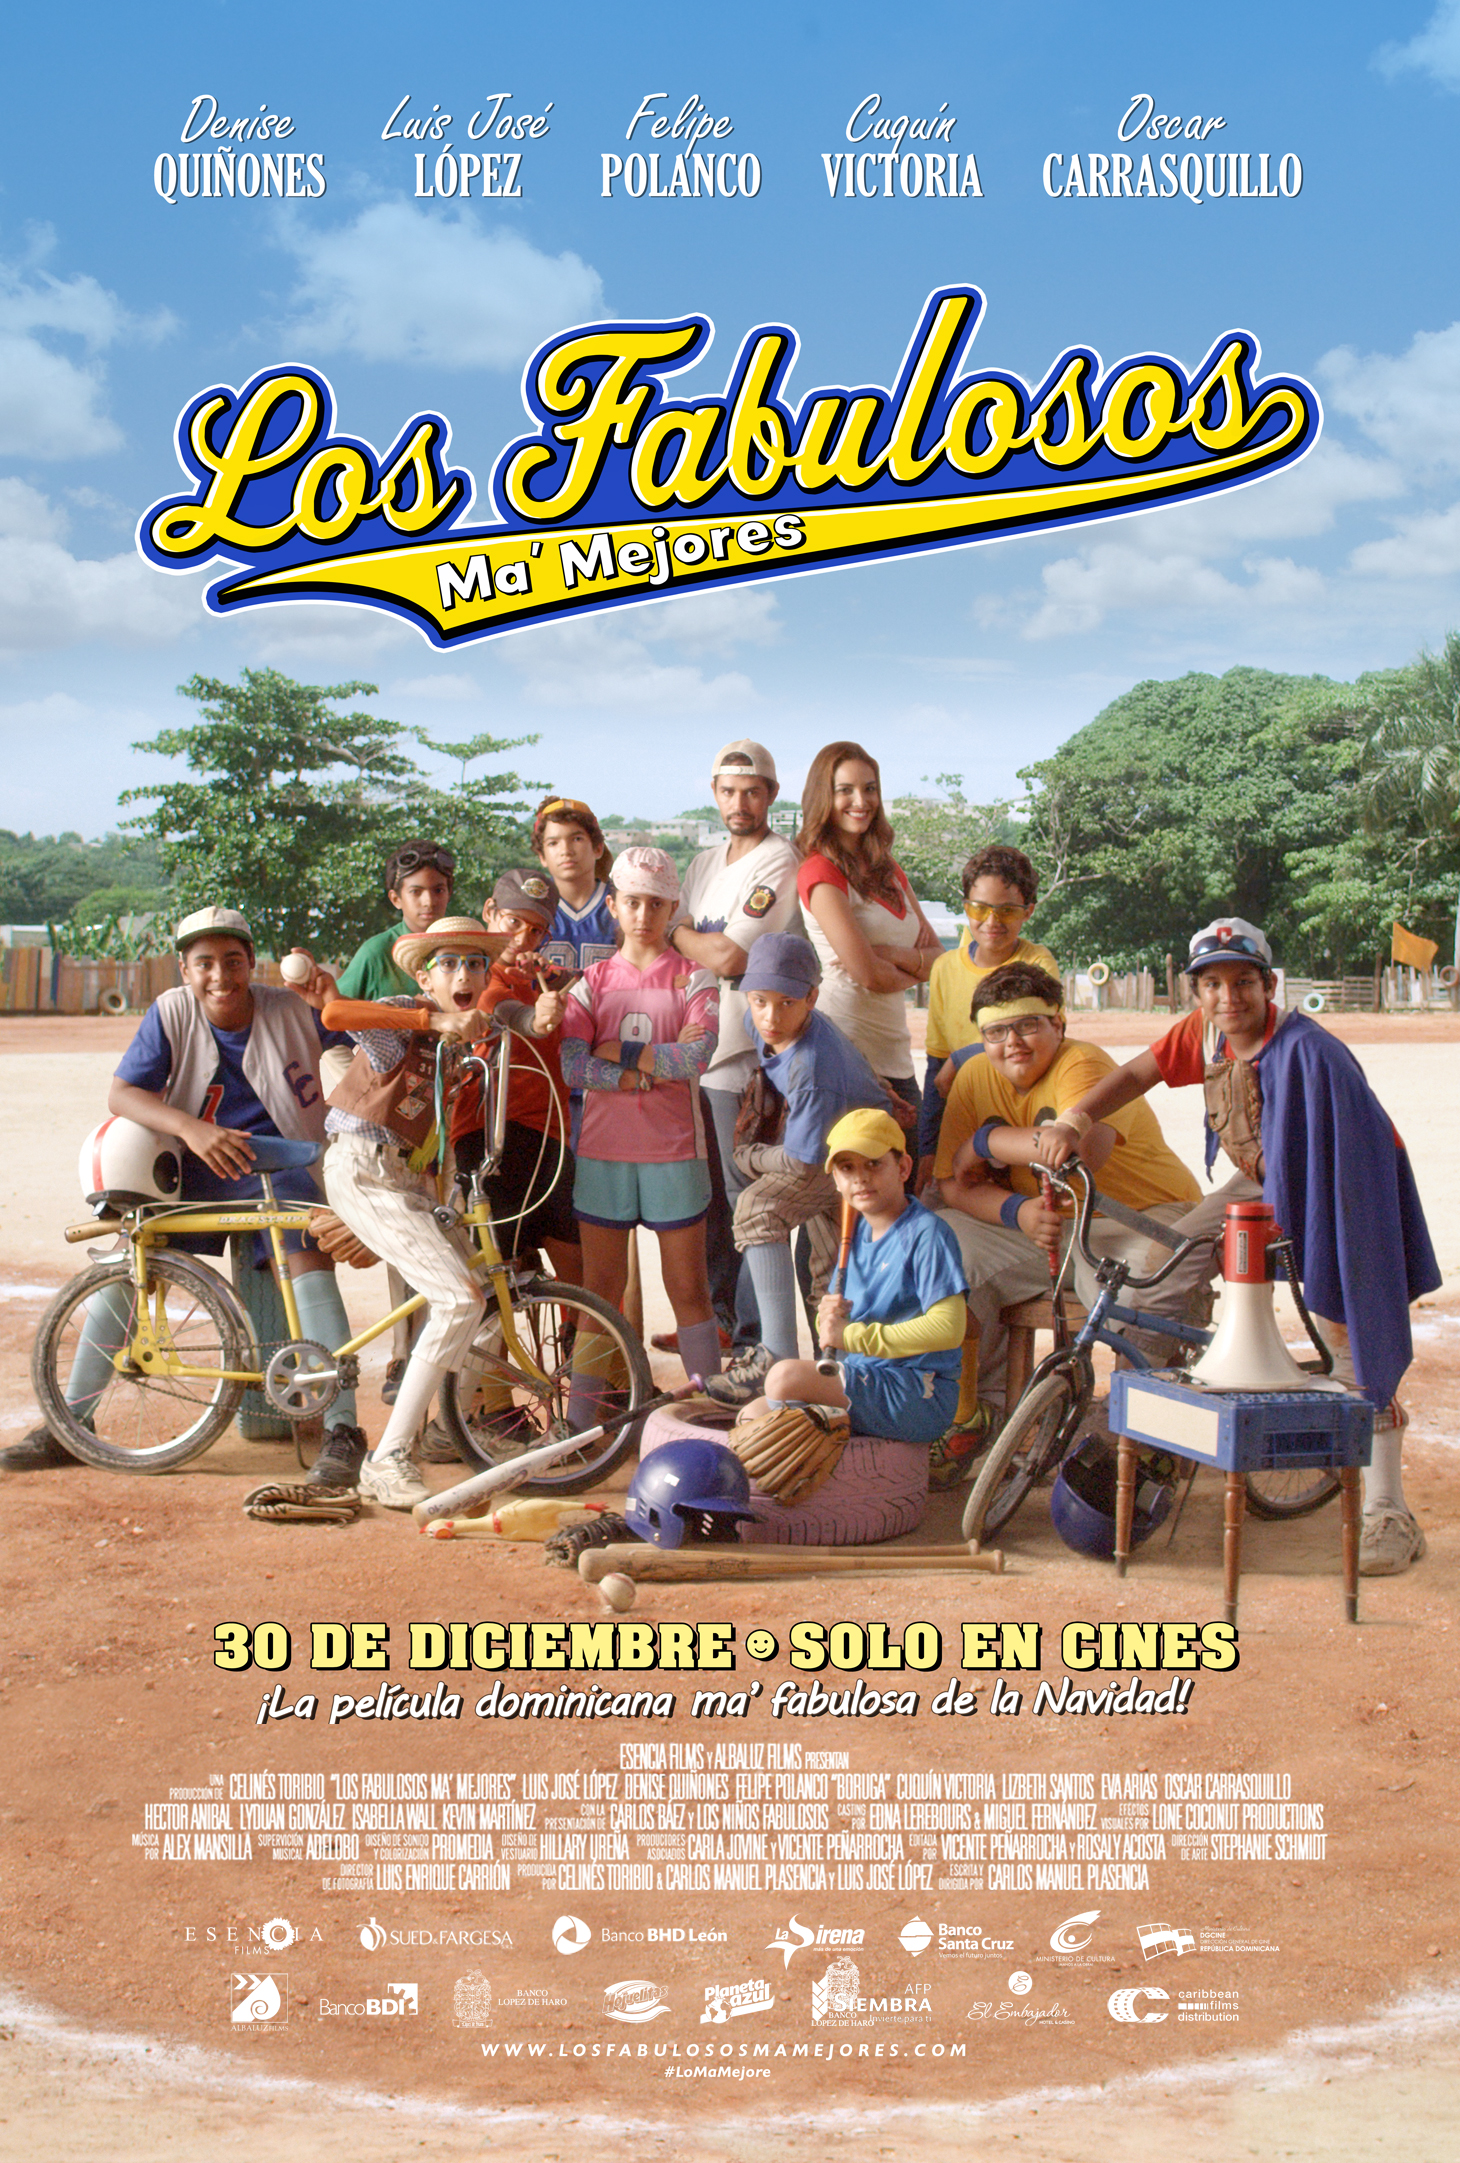 Los Fabulosos - Poster Oficial